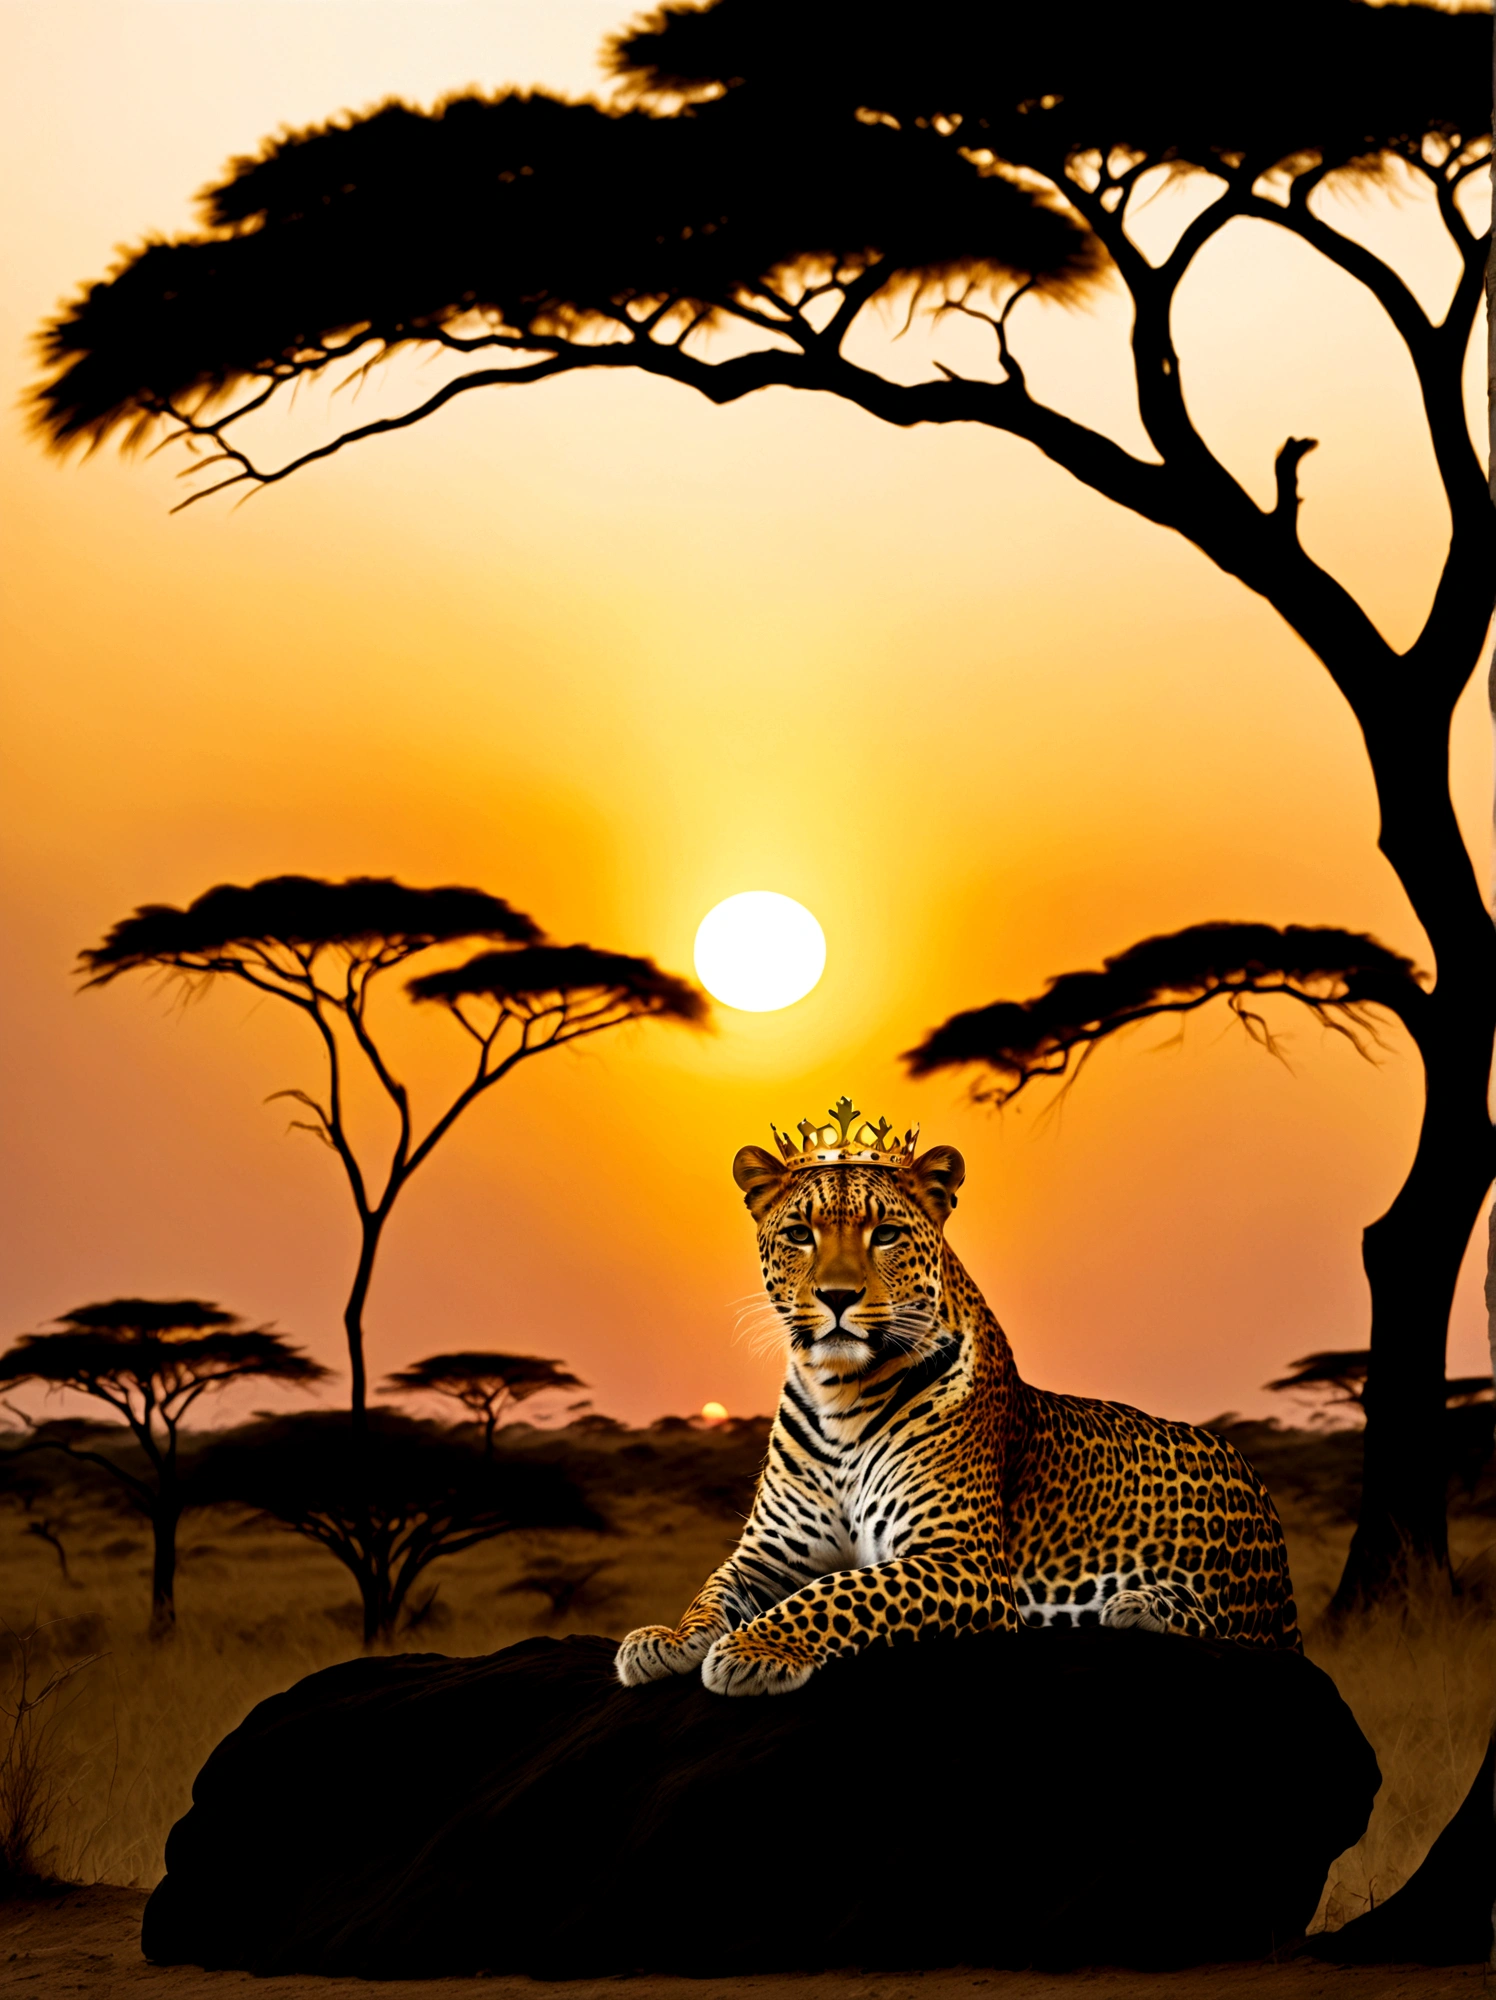 Ein Leopard mit einer goldenen Krone auf dem Kopf, majestätisch vor der Kulisse eines Sonnenuntergangs in der Savanne. Die Krone glitzert leicht im schwindenden Sonnenlicht, während das Wesen dasteht und seine Umgebung überblickt. Warme Orange- und Rosatöne der untergehenden Sonne hüllen die Szenerie, Hervorhebung des leuchtenden Fells des Leoparden. In weiter Ferne sind Silhouetten von Akazienbäumen zu sehen, die weite Landschaft übersäen.